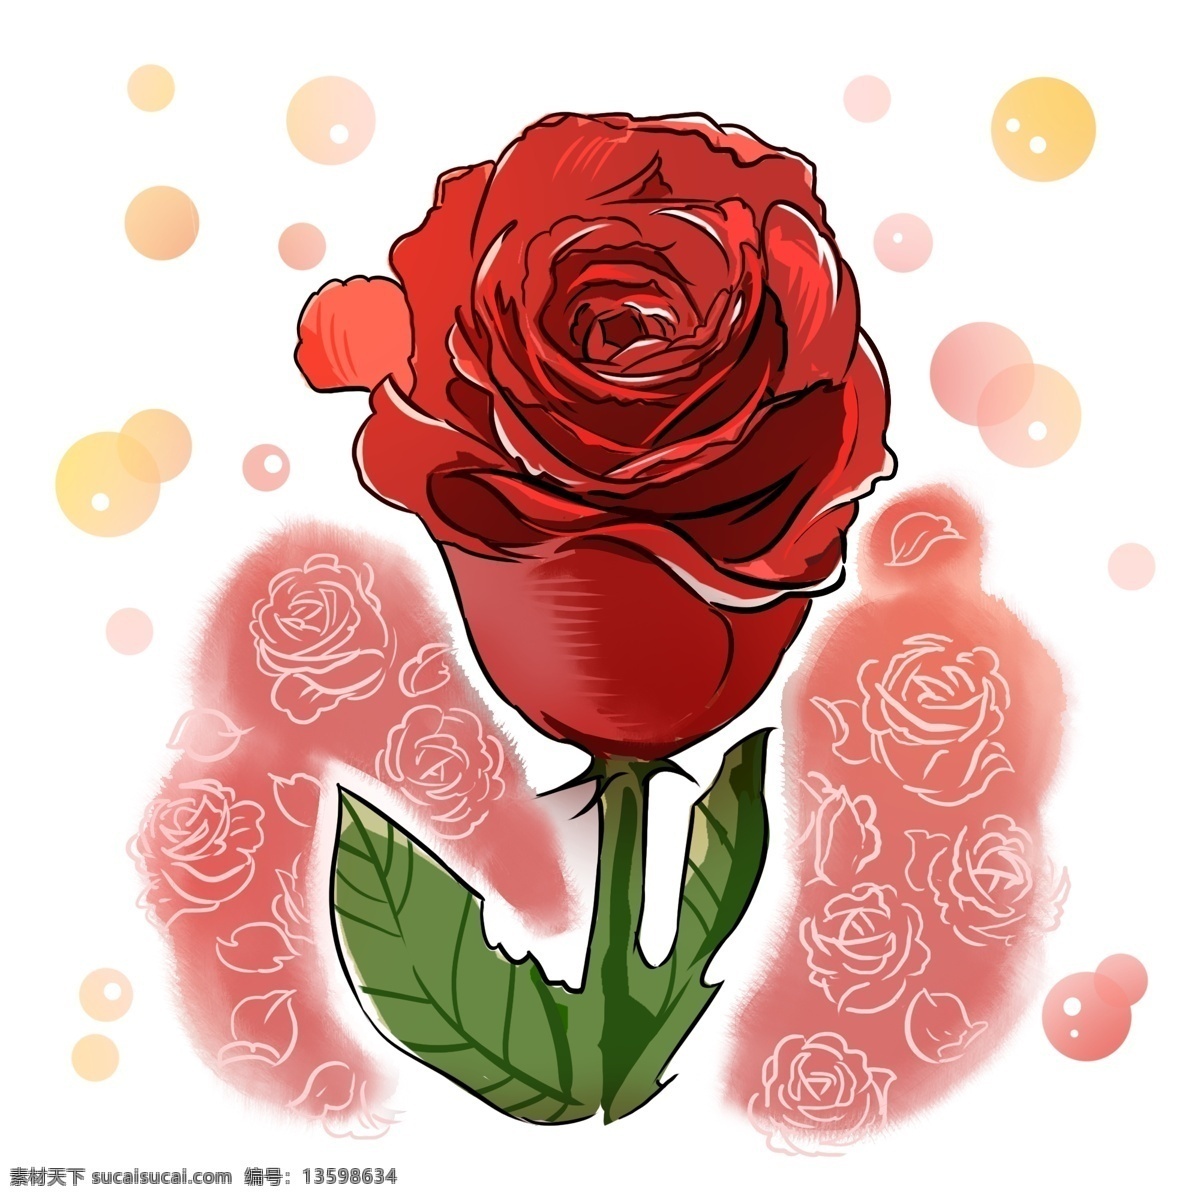 欧式 玫瑰 花朵 热情 恋爱 结婚 礼 花瓣 红色 浪漫 玫瑰花 婚礼